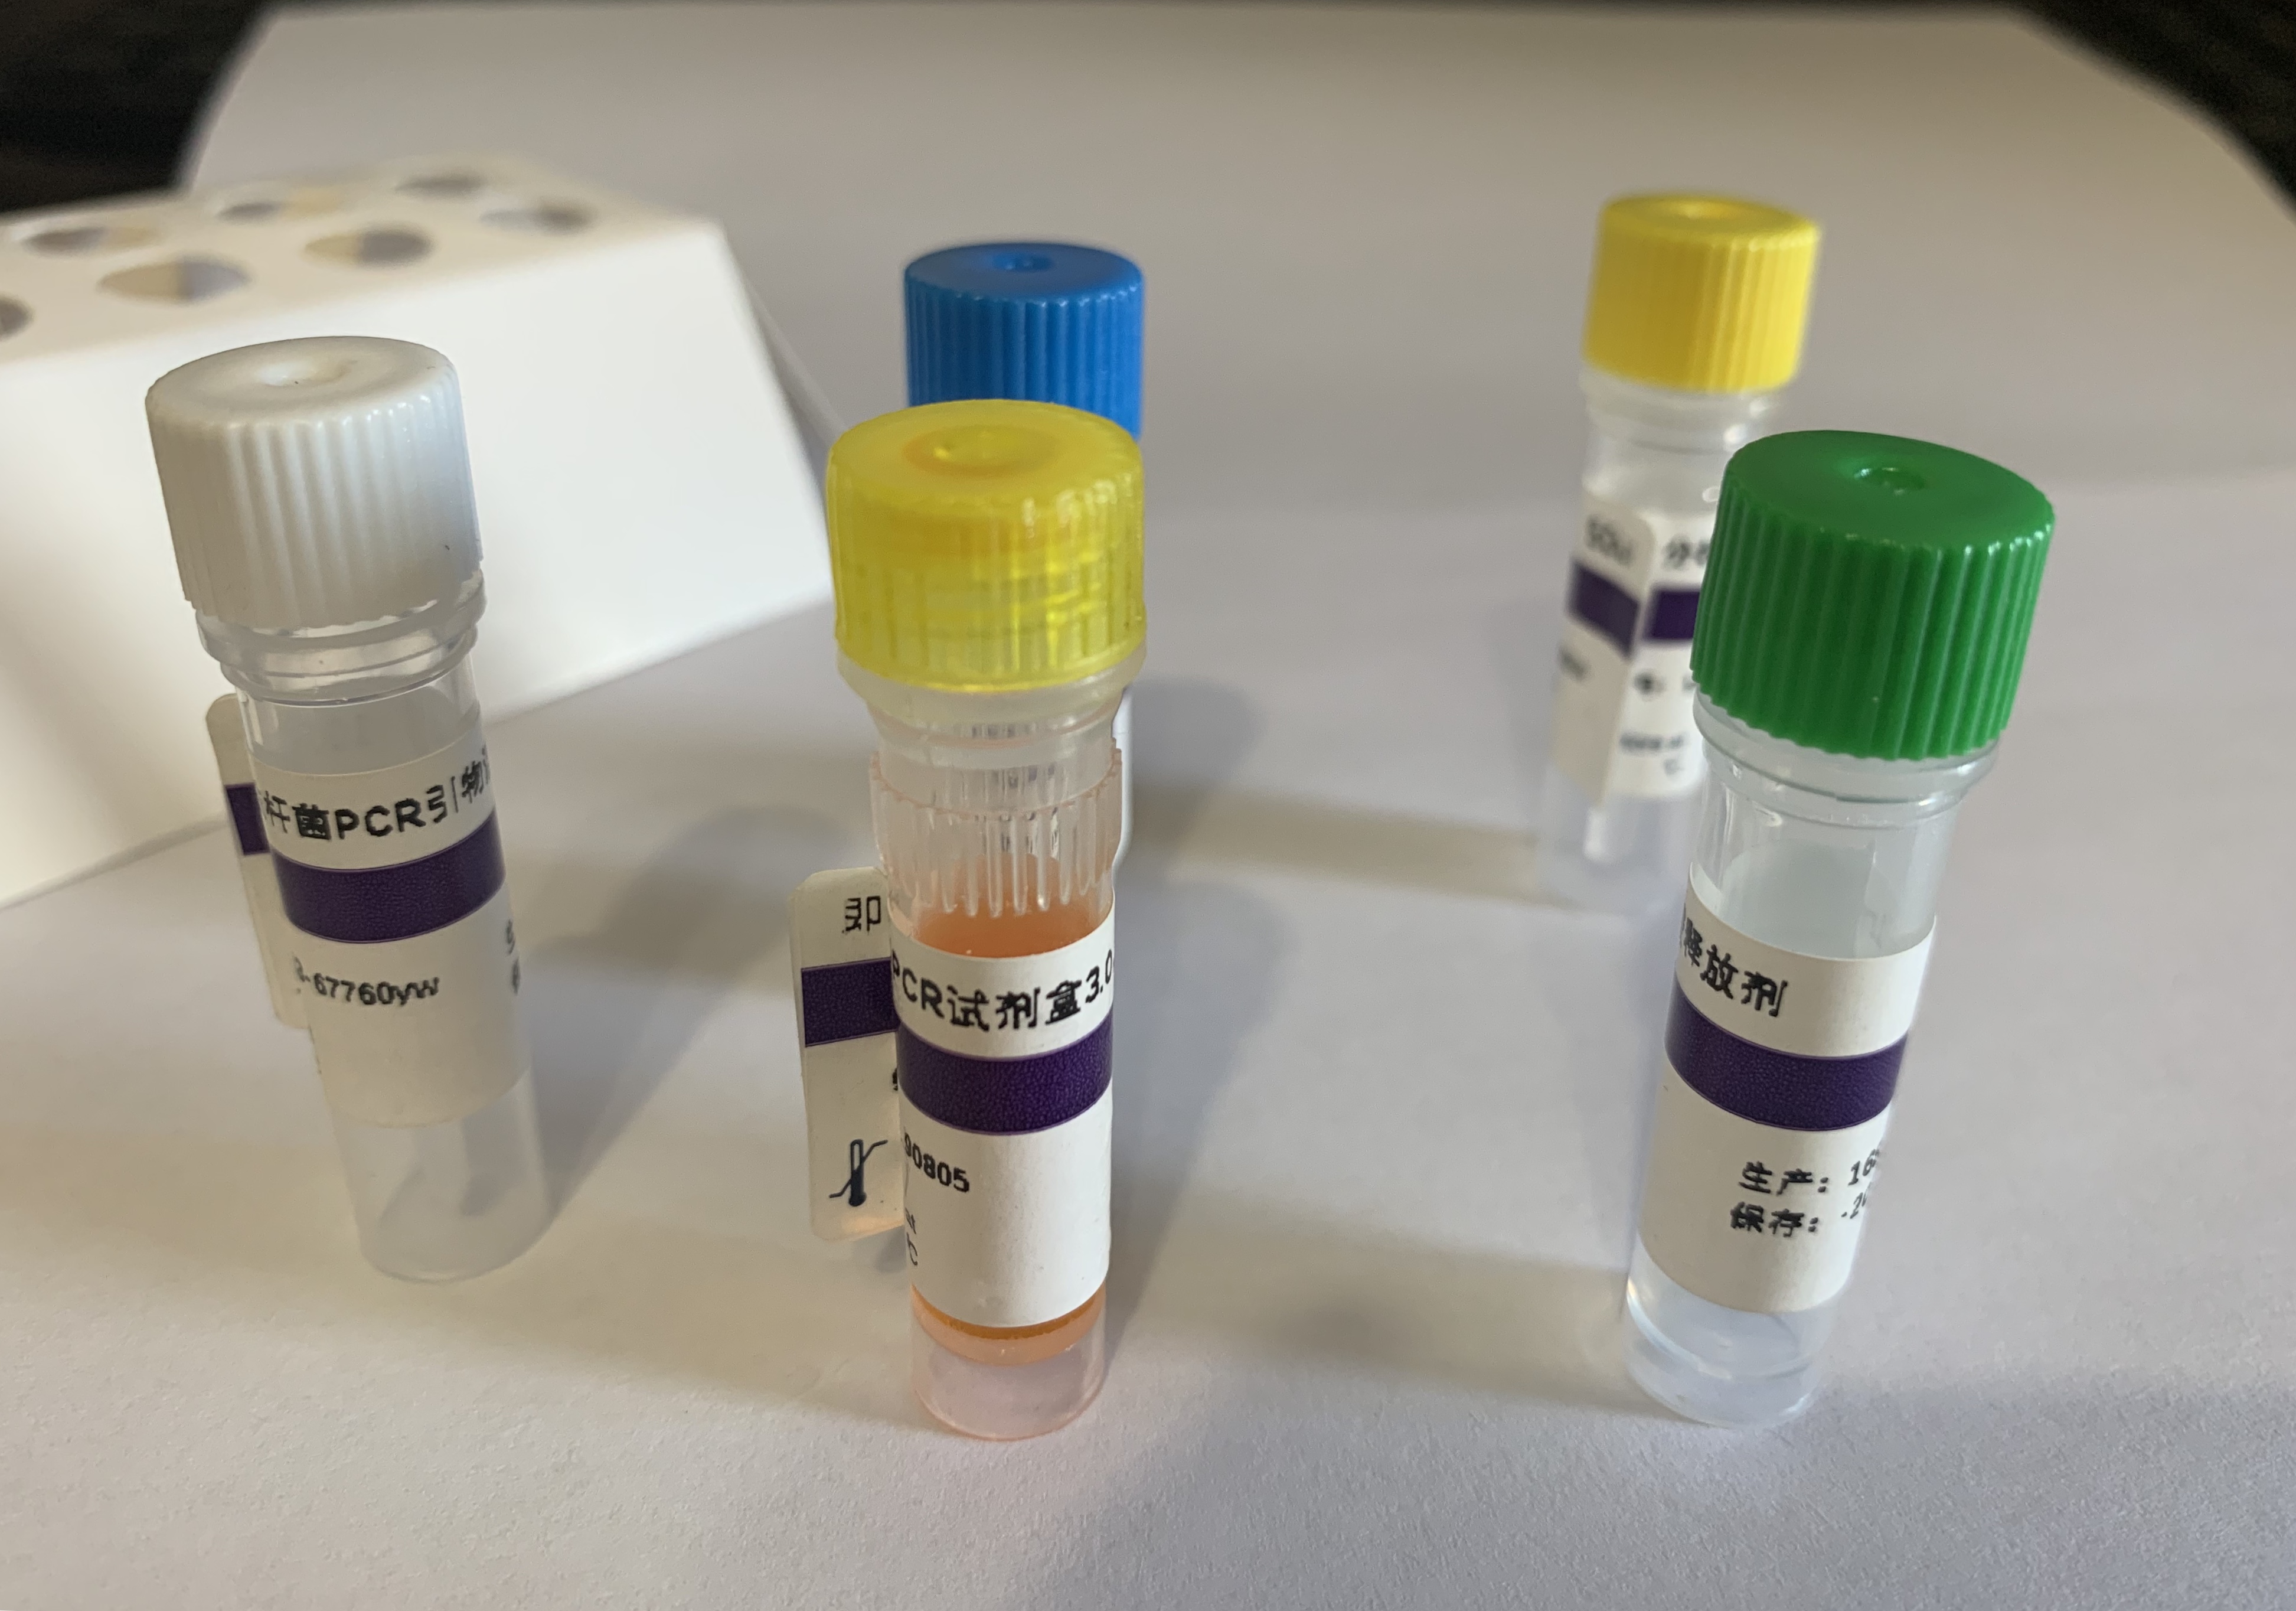 羊边界病病毒探针法荧光定量RT-PCR试剂盒